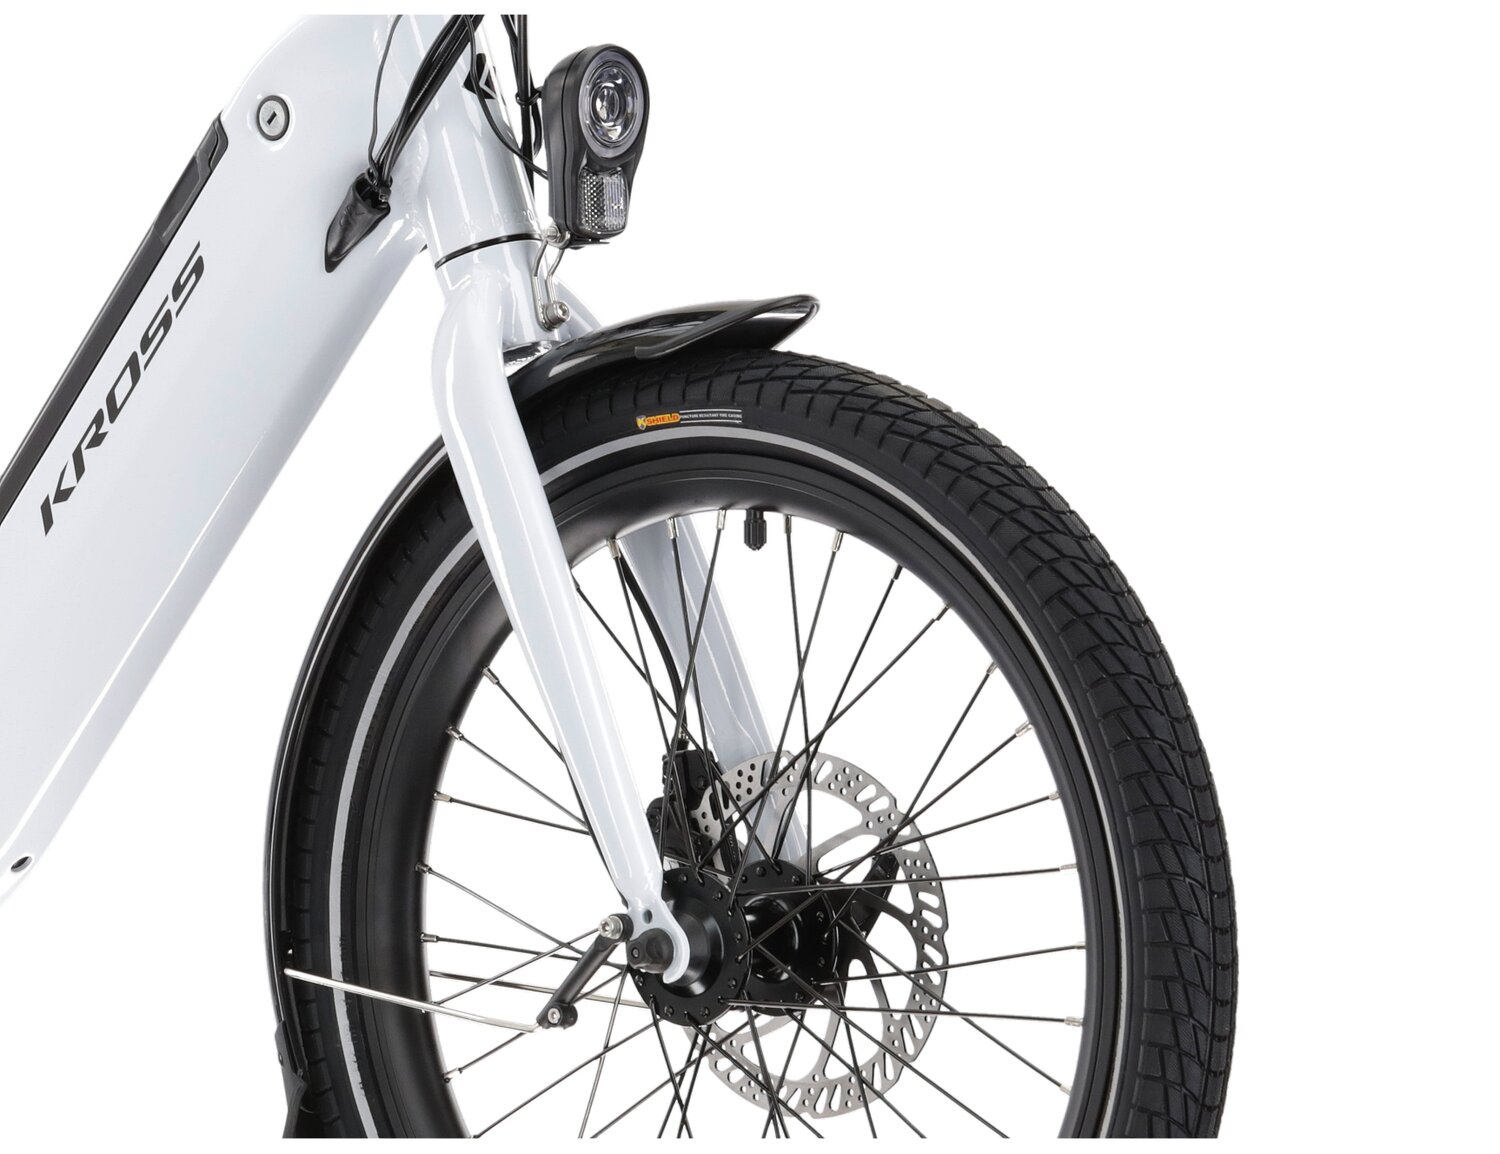 Aluminowa rama, amortyzowany widelec SR SUNTOUR NEX HLO o skoku 63mm oraz opony w elektrycznym rowerze miejskim Ebike City KROSS Flex Hybrid 1.0 367 Wh 